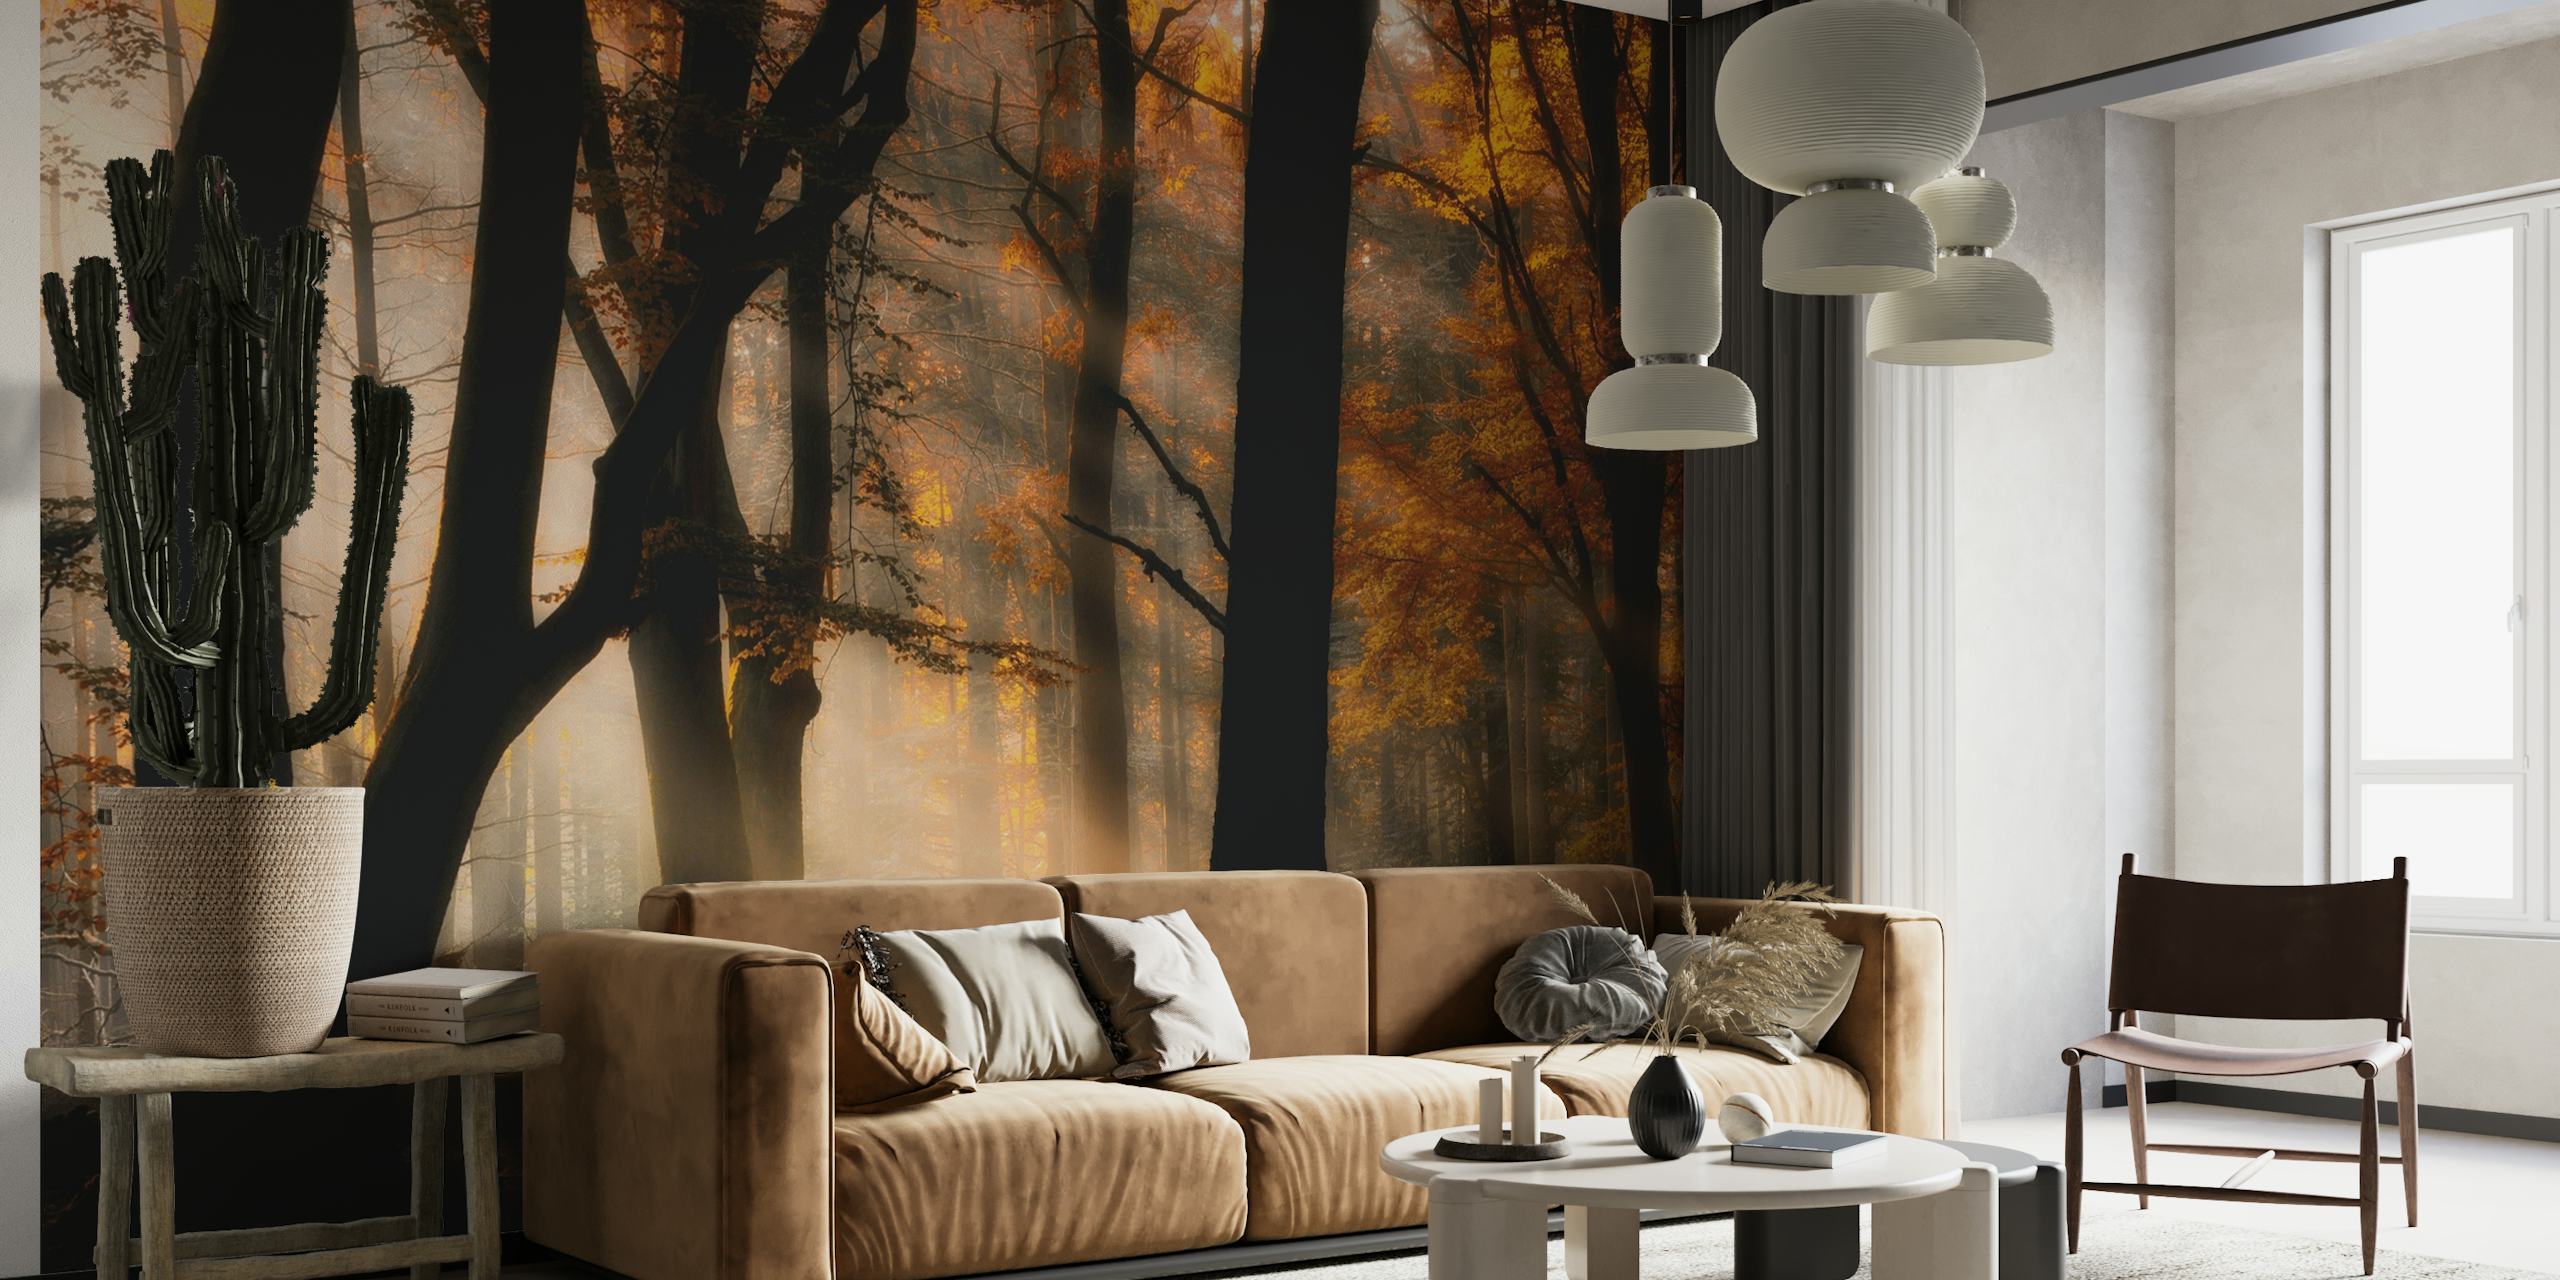 Zidna slika s scenom jesenje šume sa sunčevom svjetlošću koja se filtrira kroz drveće